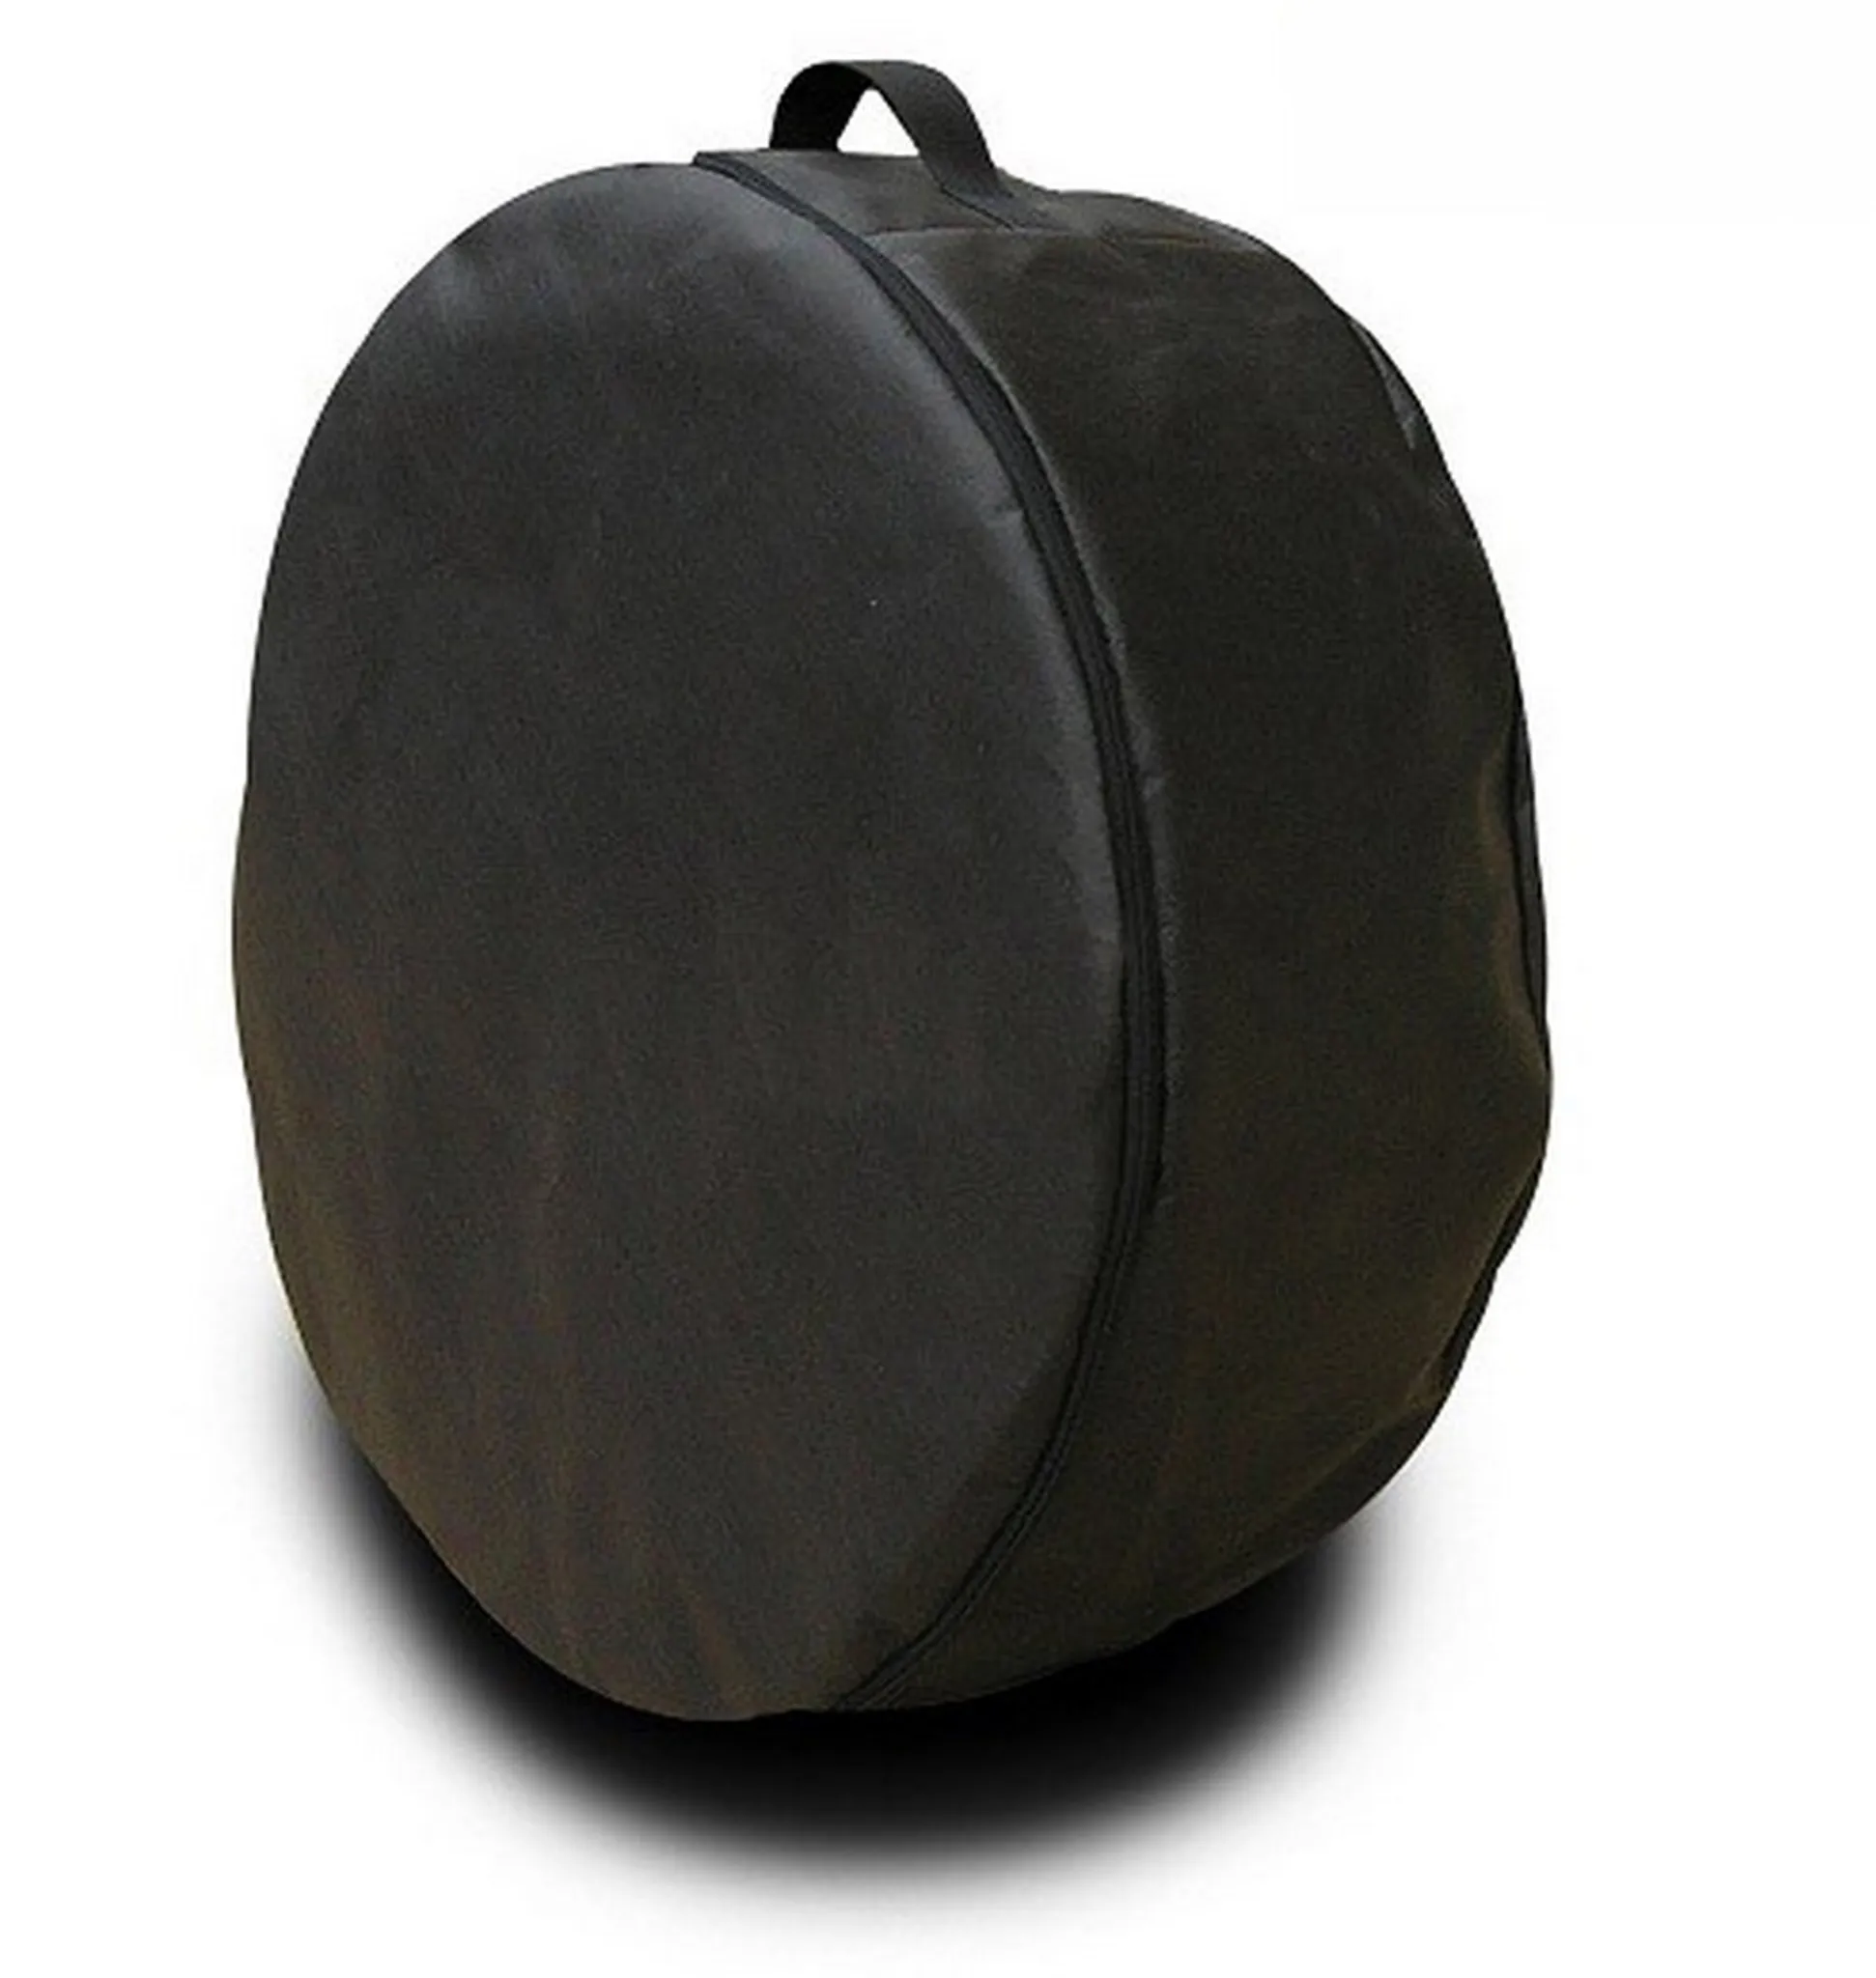 Reifentasche von Norauto, Größe L, 1 Stück - ATU